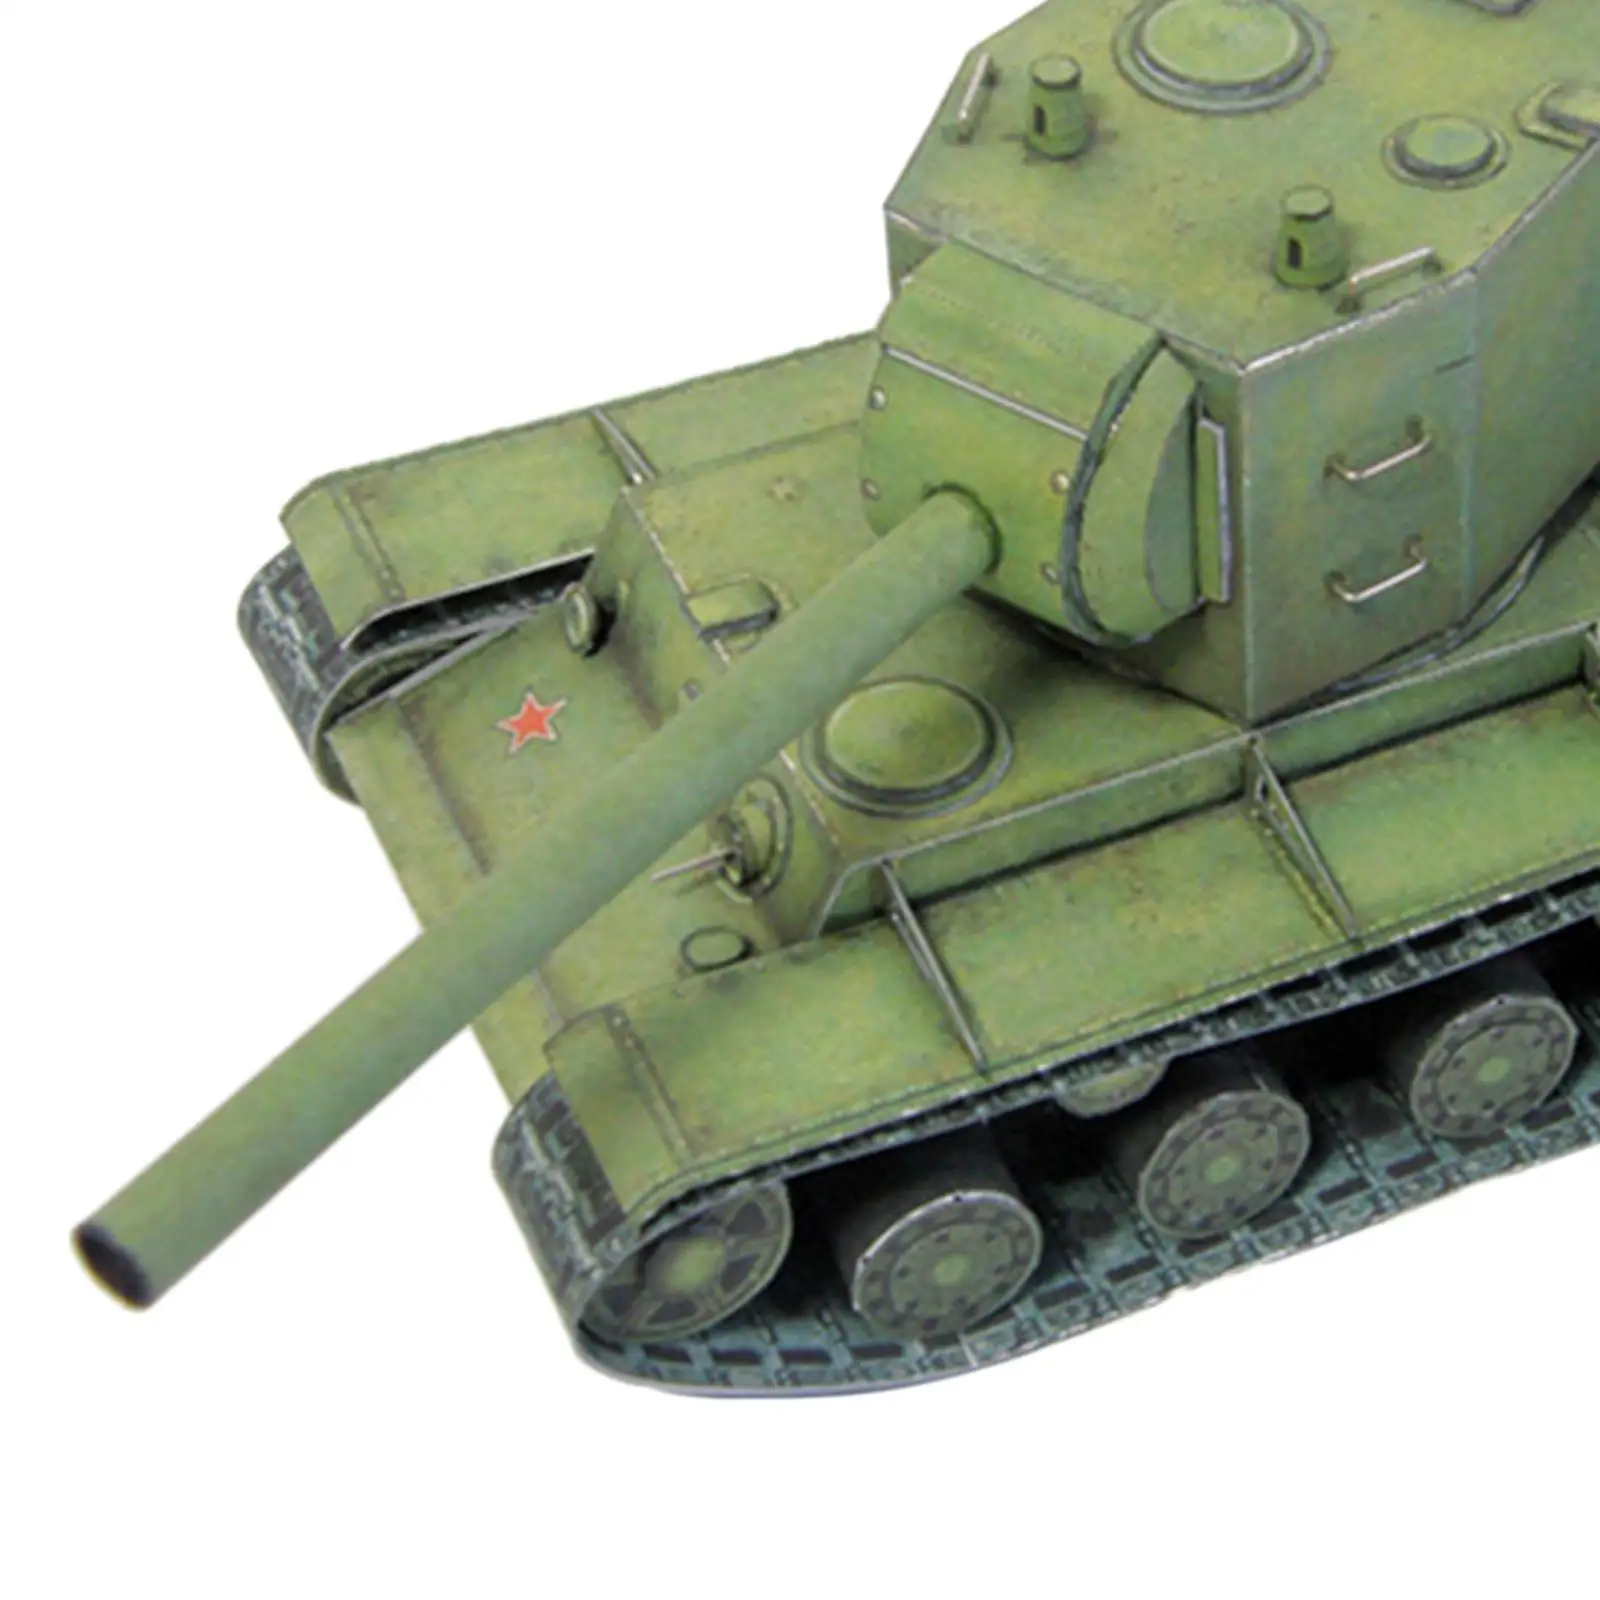 

Модель танка «сделай сам» 1/35 года, набор моделей советской модели, строительные наборы, 3D бумажная головоломка для мальчиков, детей, коллекц...